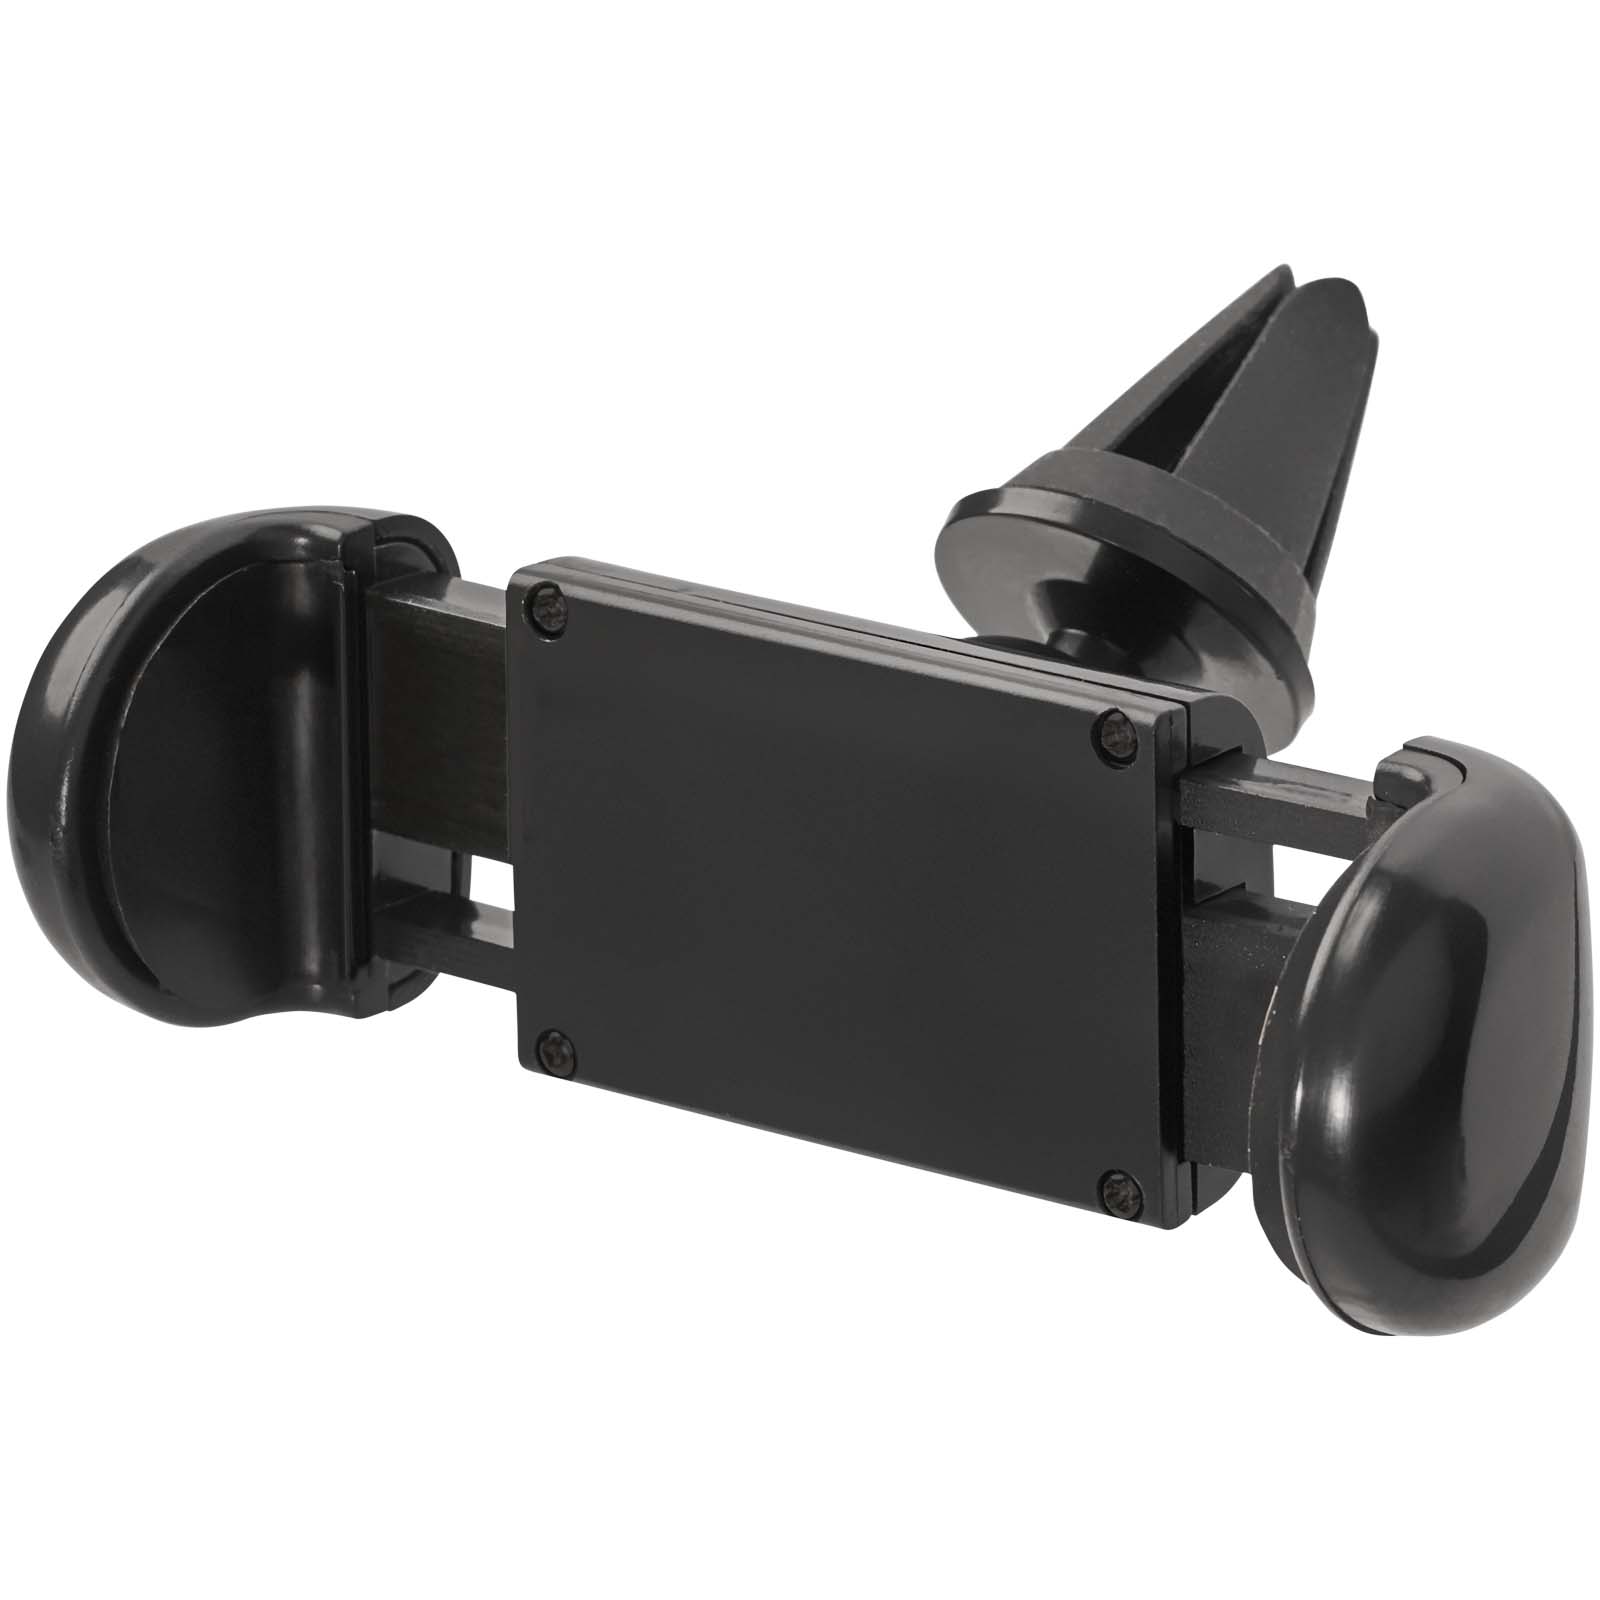 Accessoires pour téléphone et tablette publicitaires - Support de téléphone portable pour voiture Grip - 4